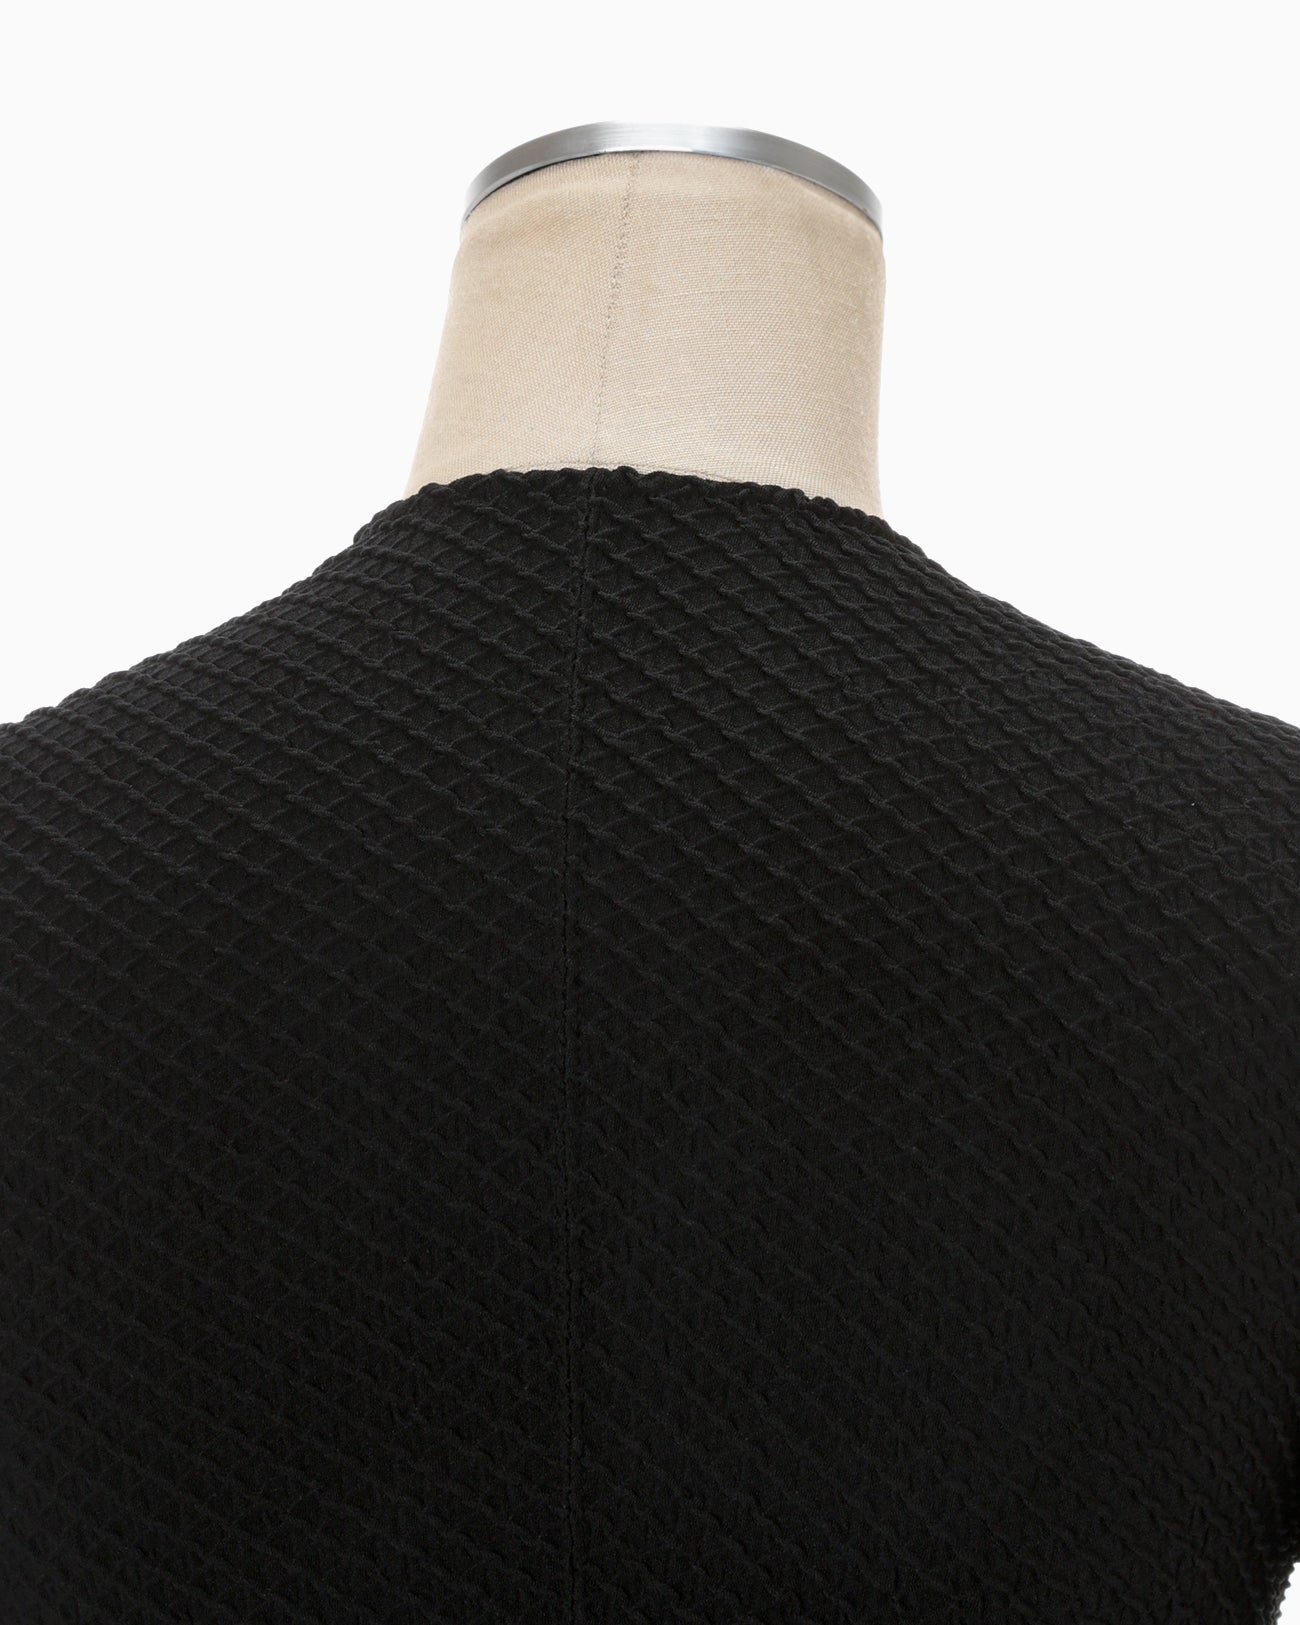 Shirring Jersey Jacquard Top - black